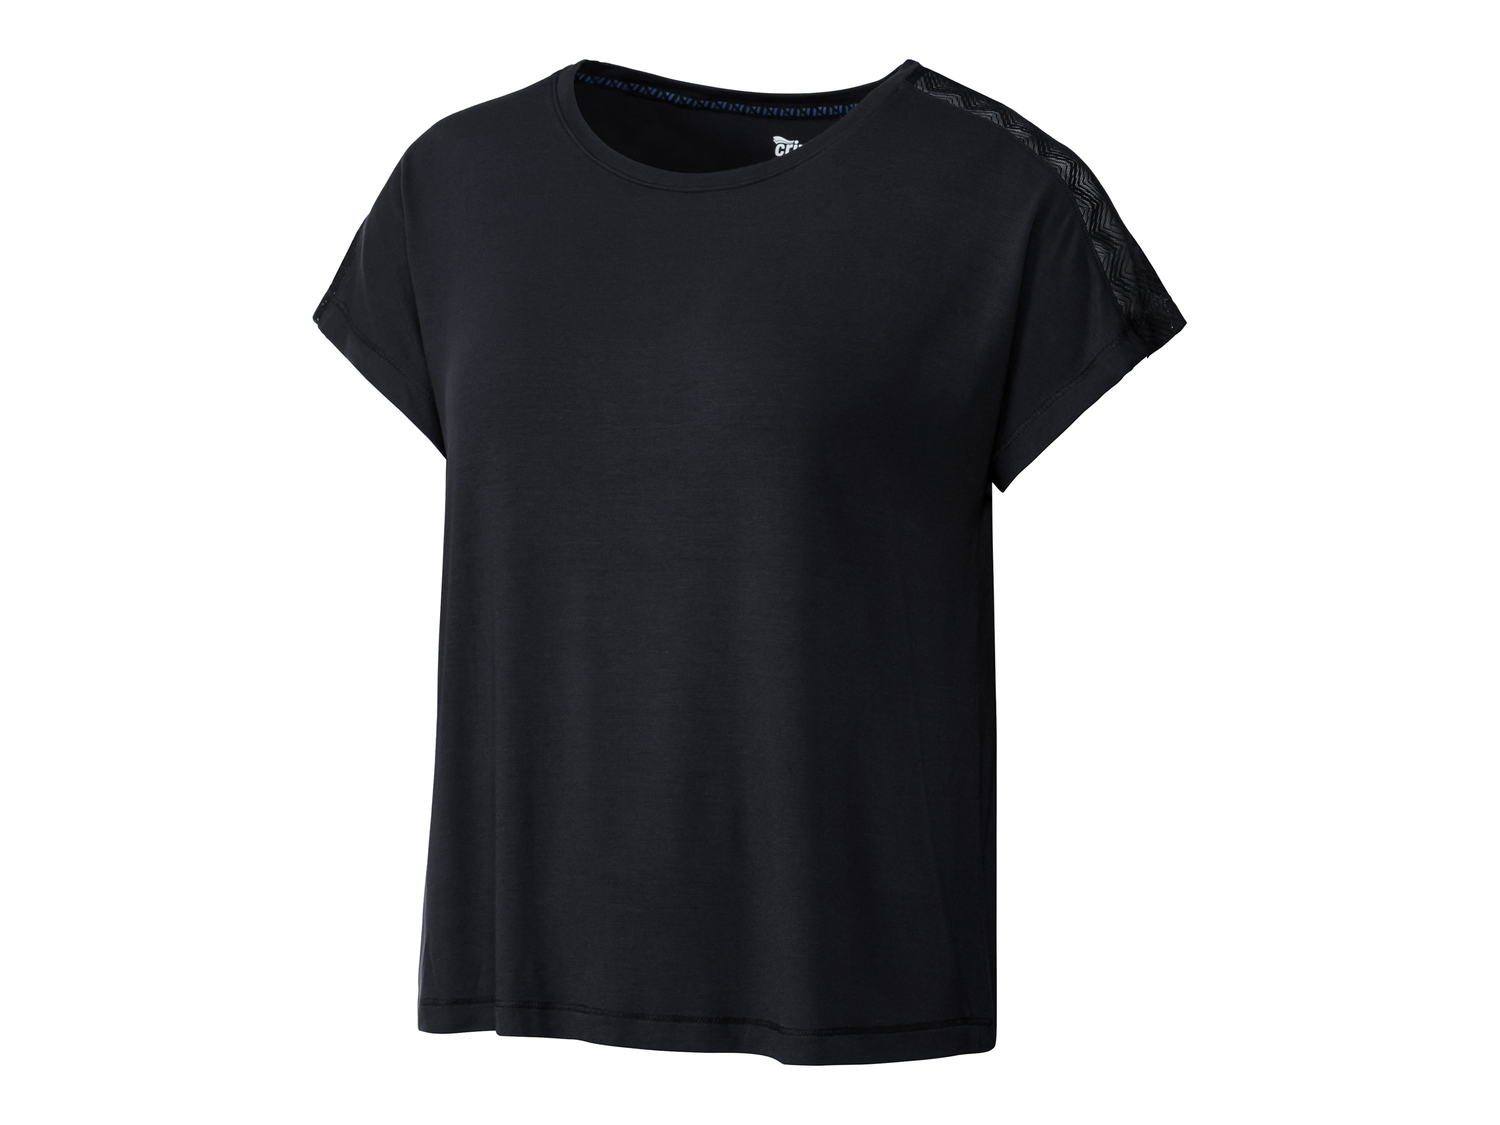 T-shirt sportiva da donna Crivit, prezzo 4.99 € 
Misure: S-L
Taglie disponibili

Caratteristiche

- ...